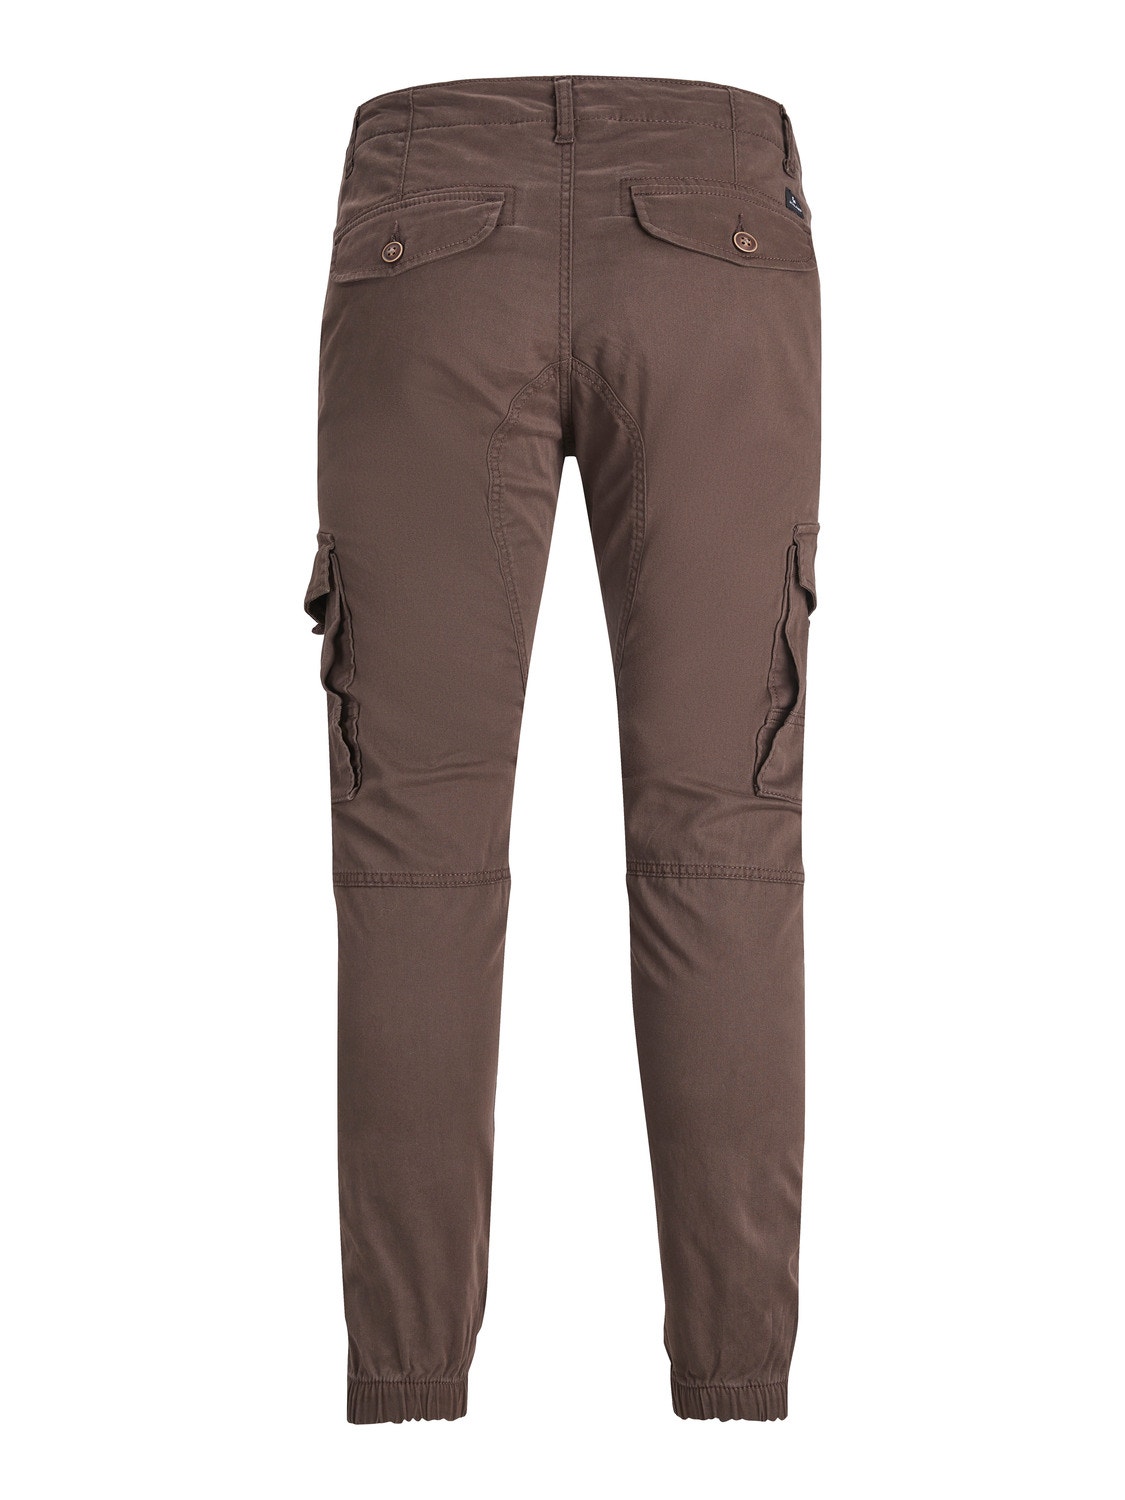 Jack & Jones Slim Fit Spodnie bojówki -Seal Brown - 12139912